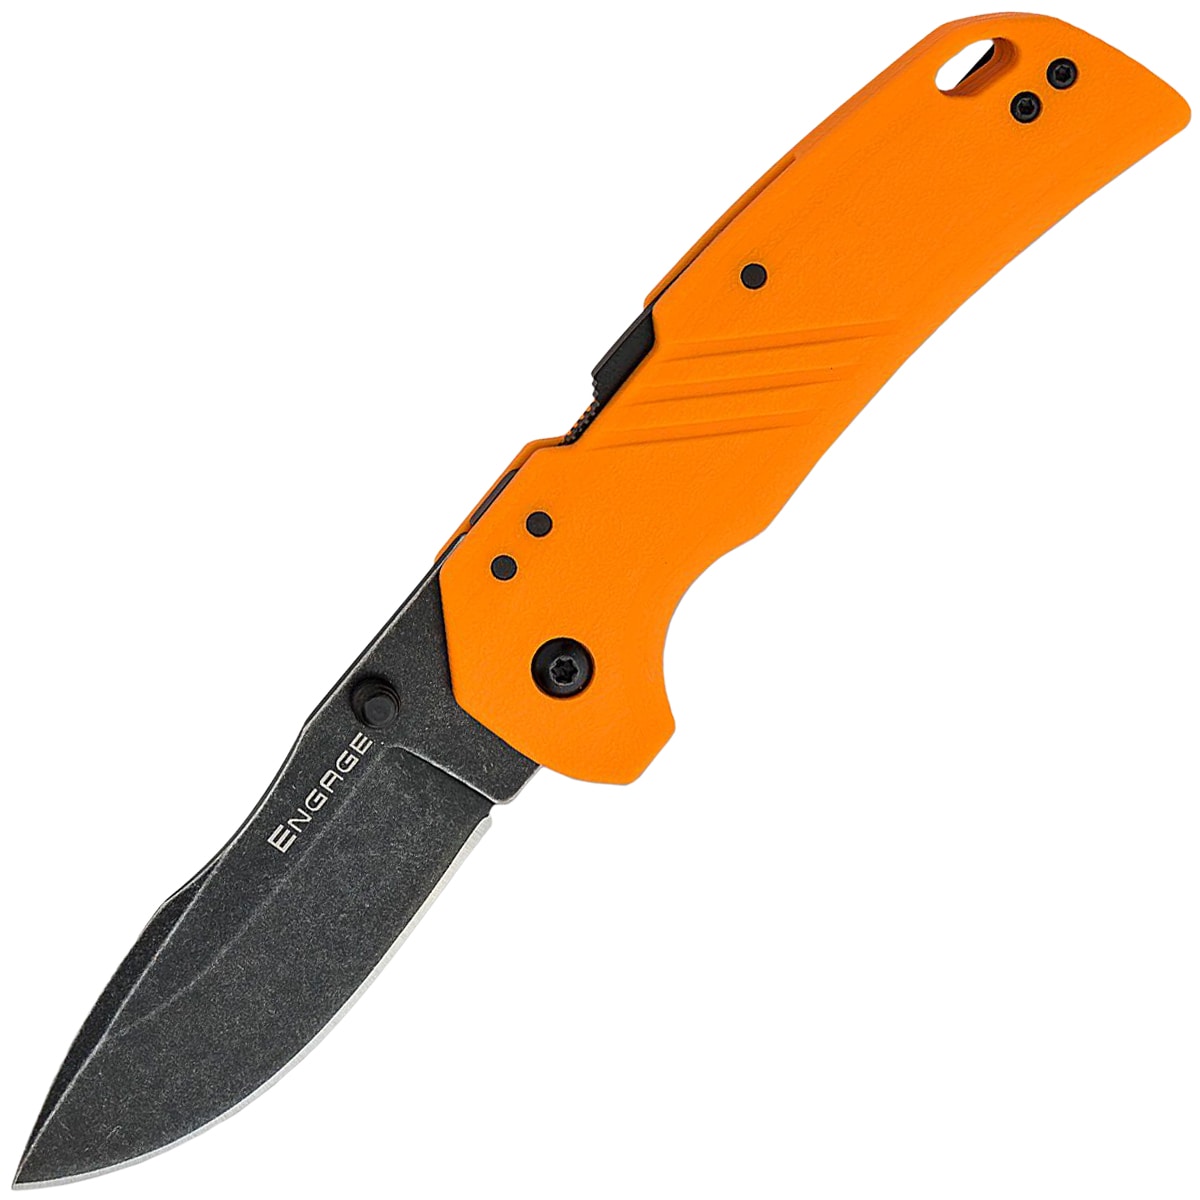 Nóż składany Cold Steel Engage 4116SS - Blaze Orange